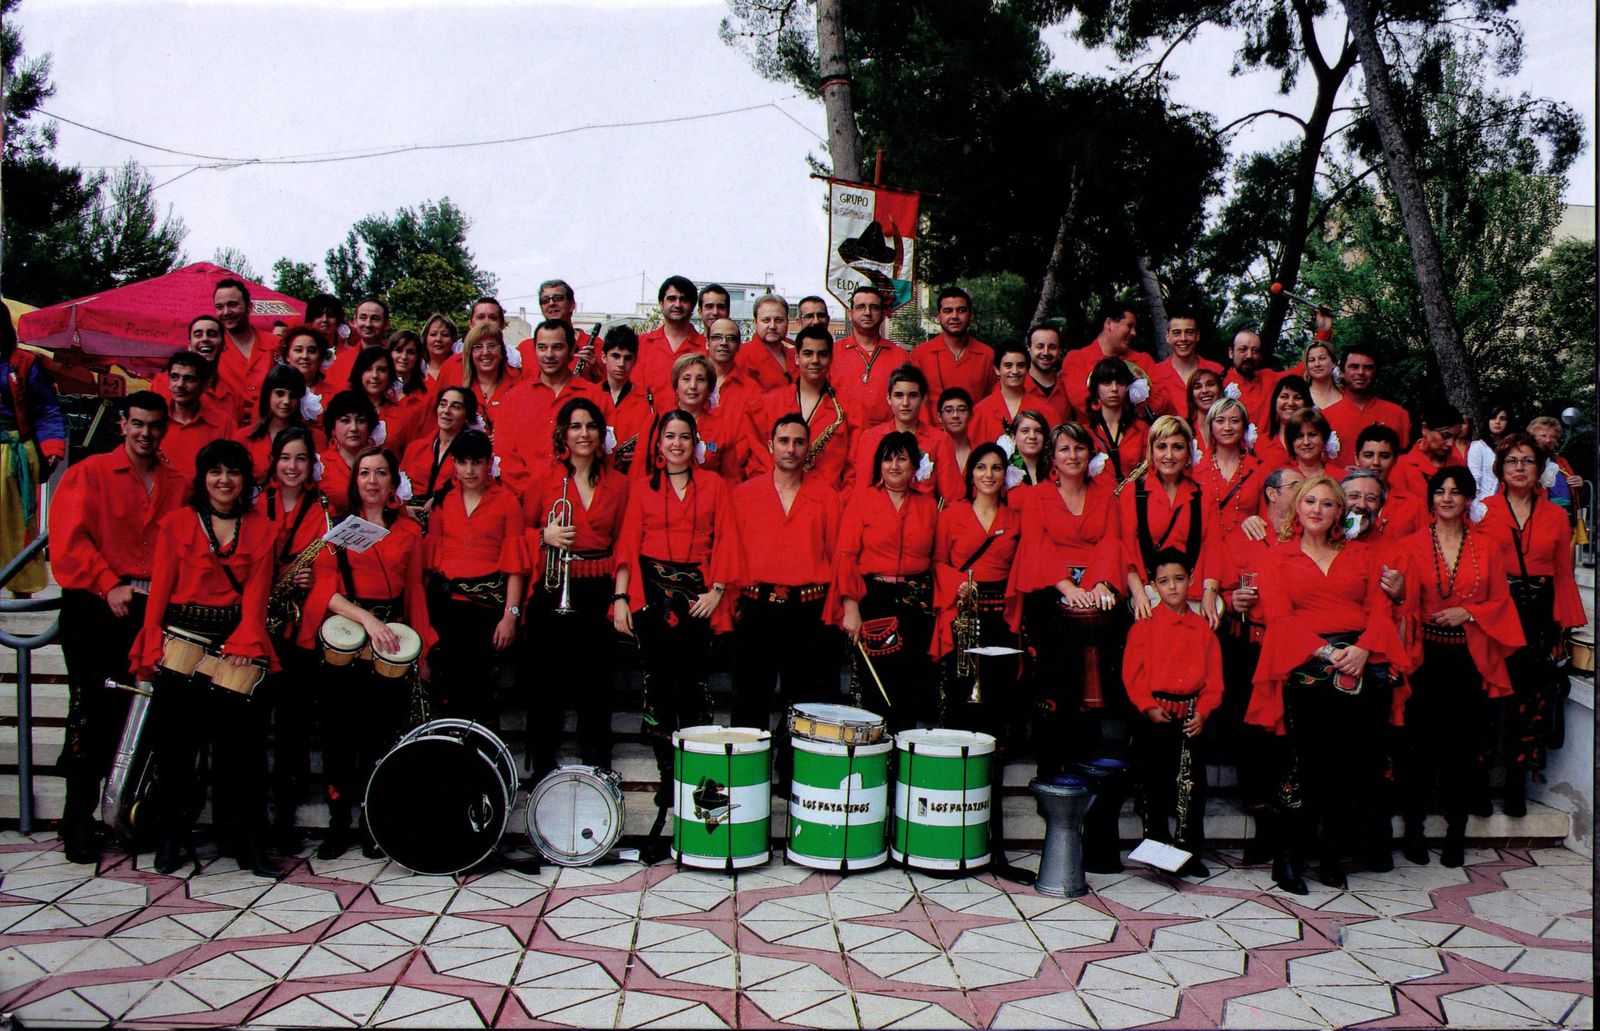 Grupo Musical Zalagarda Contrabandista